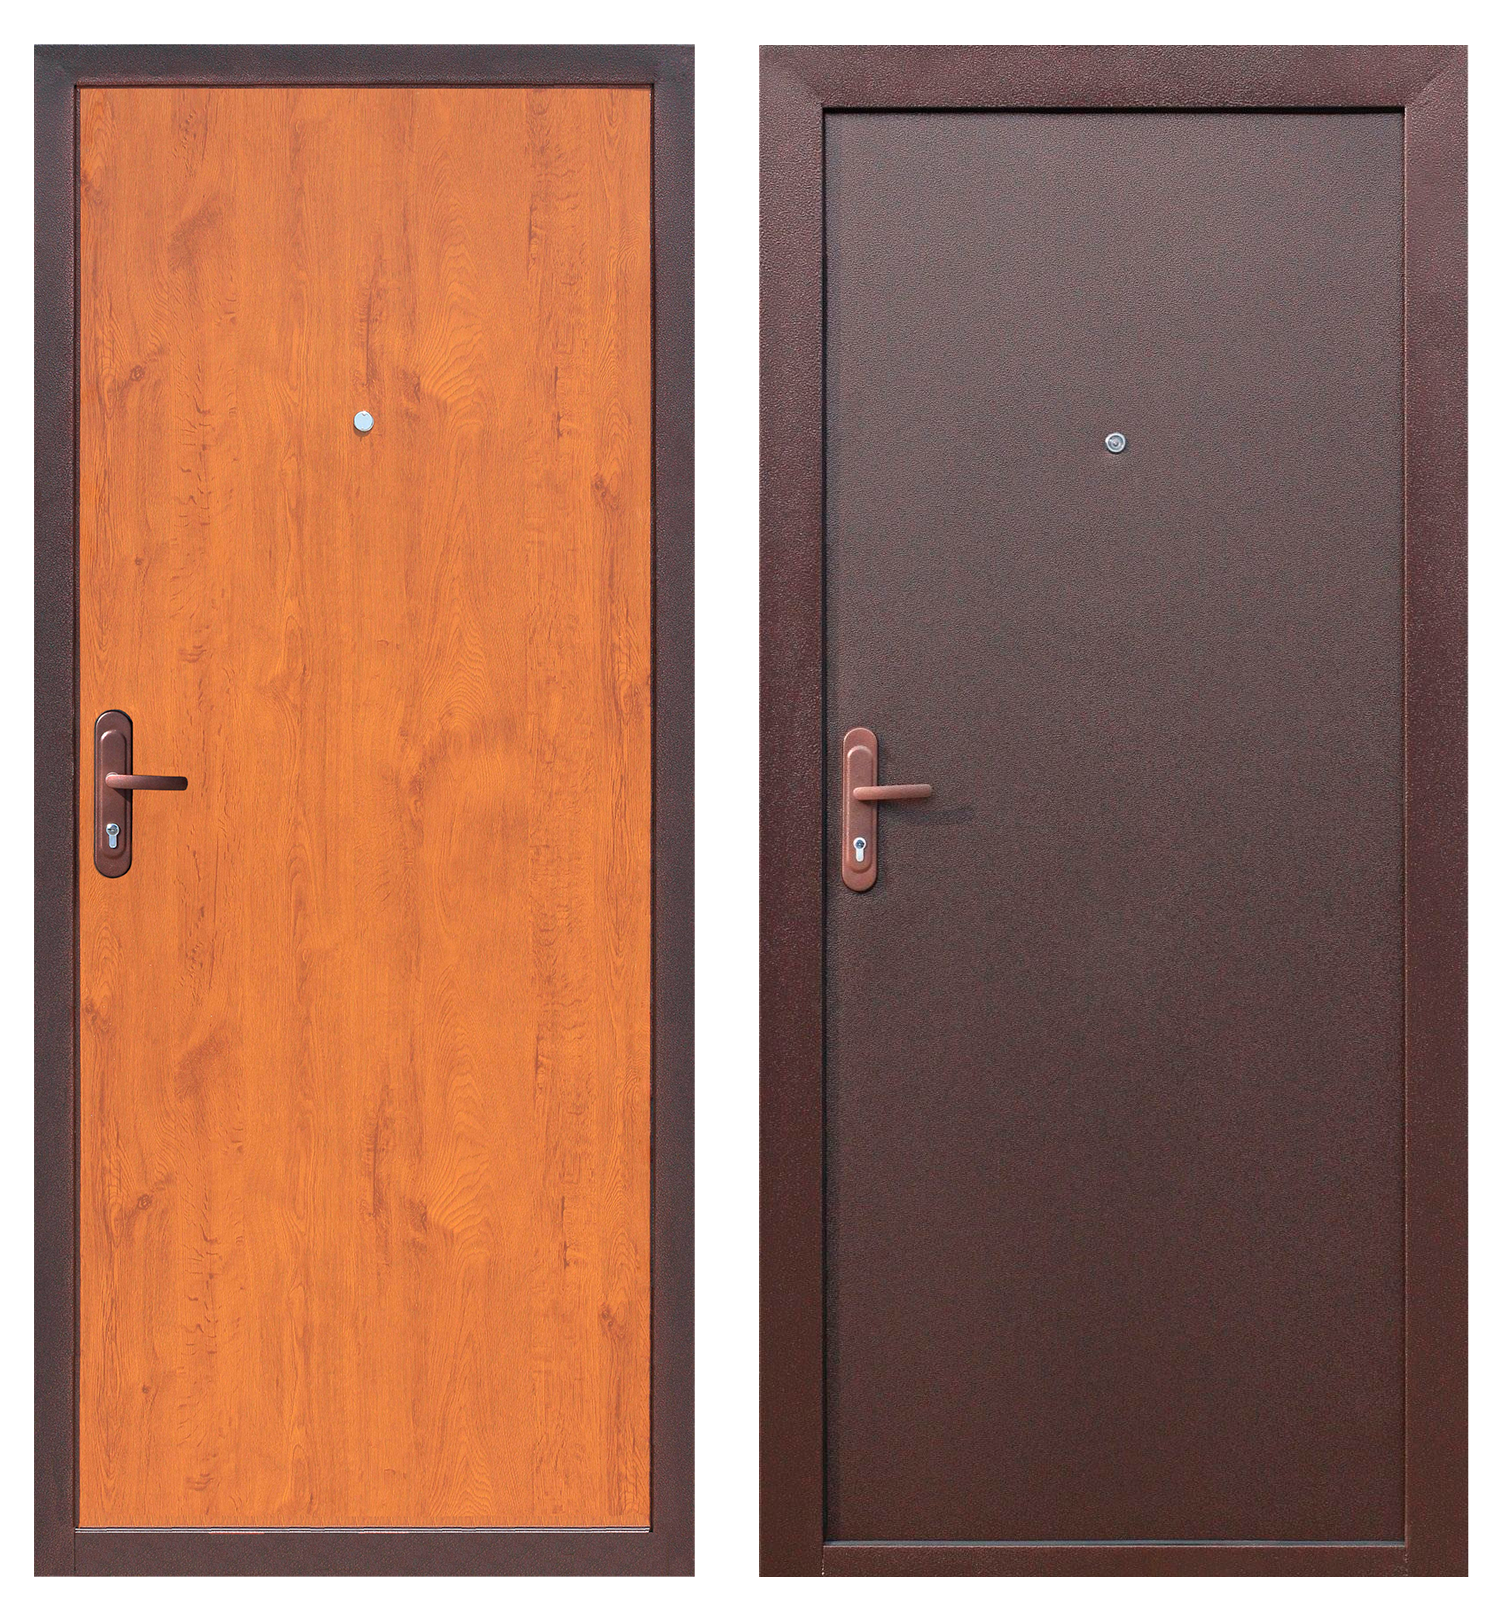 Мерлен железная дверь. Двери Стройгост 5 металл металл. Дверь Стройгост 5.1 золотистый дуб. Дверь Стройгост 5-1 металл/металл. Дверь мет. Стройгост 5-1 металл/металл (880×2060).